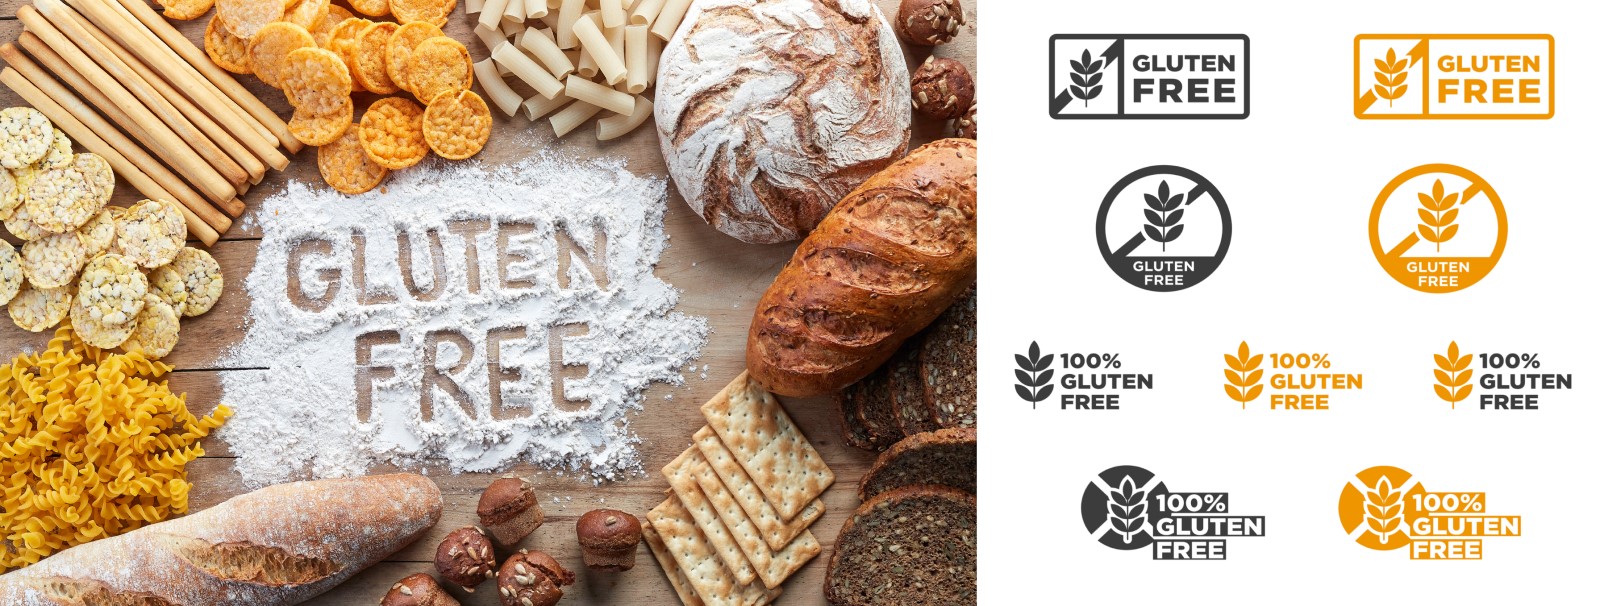 Glutenfrei - Bäckereiprodukte und Kennzeichnung